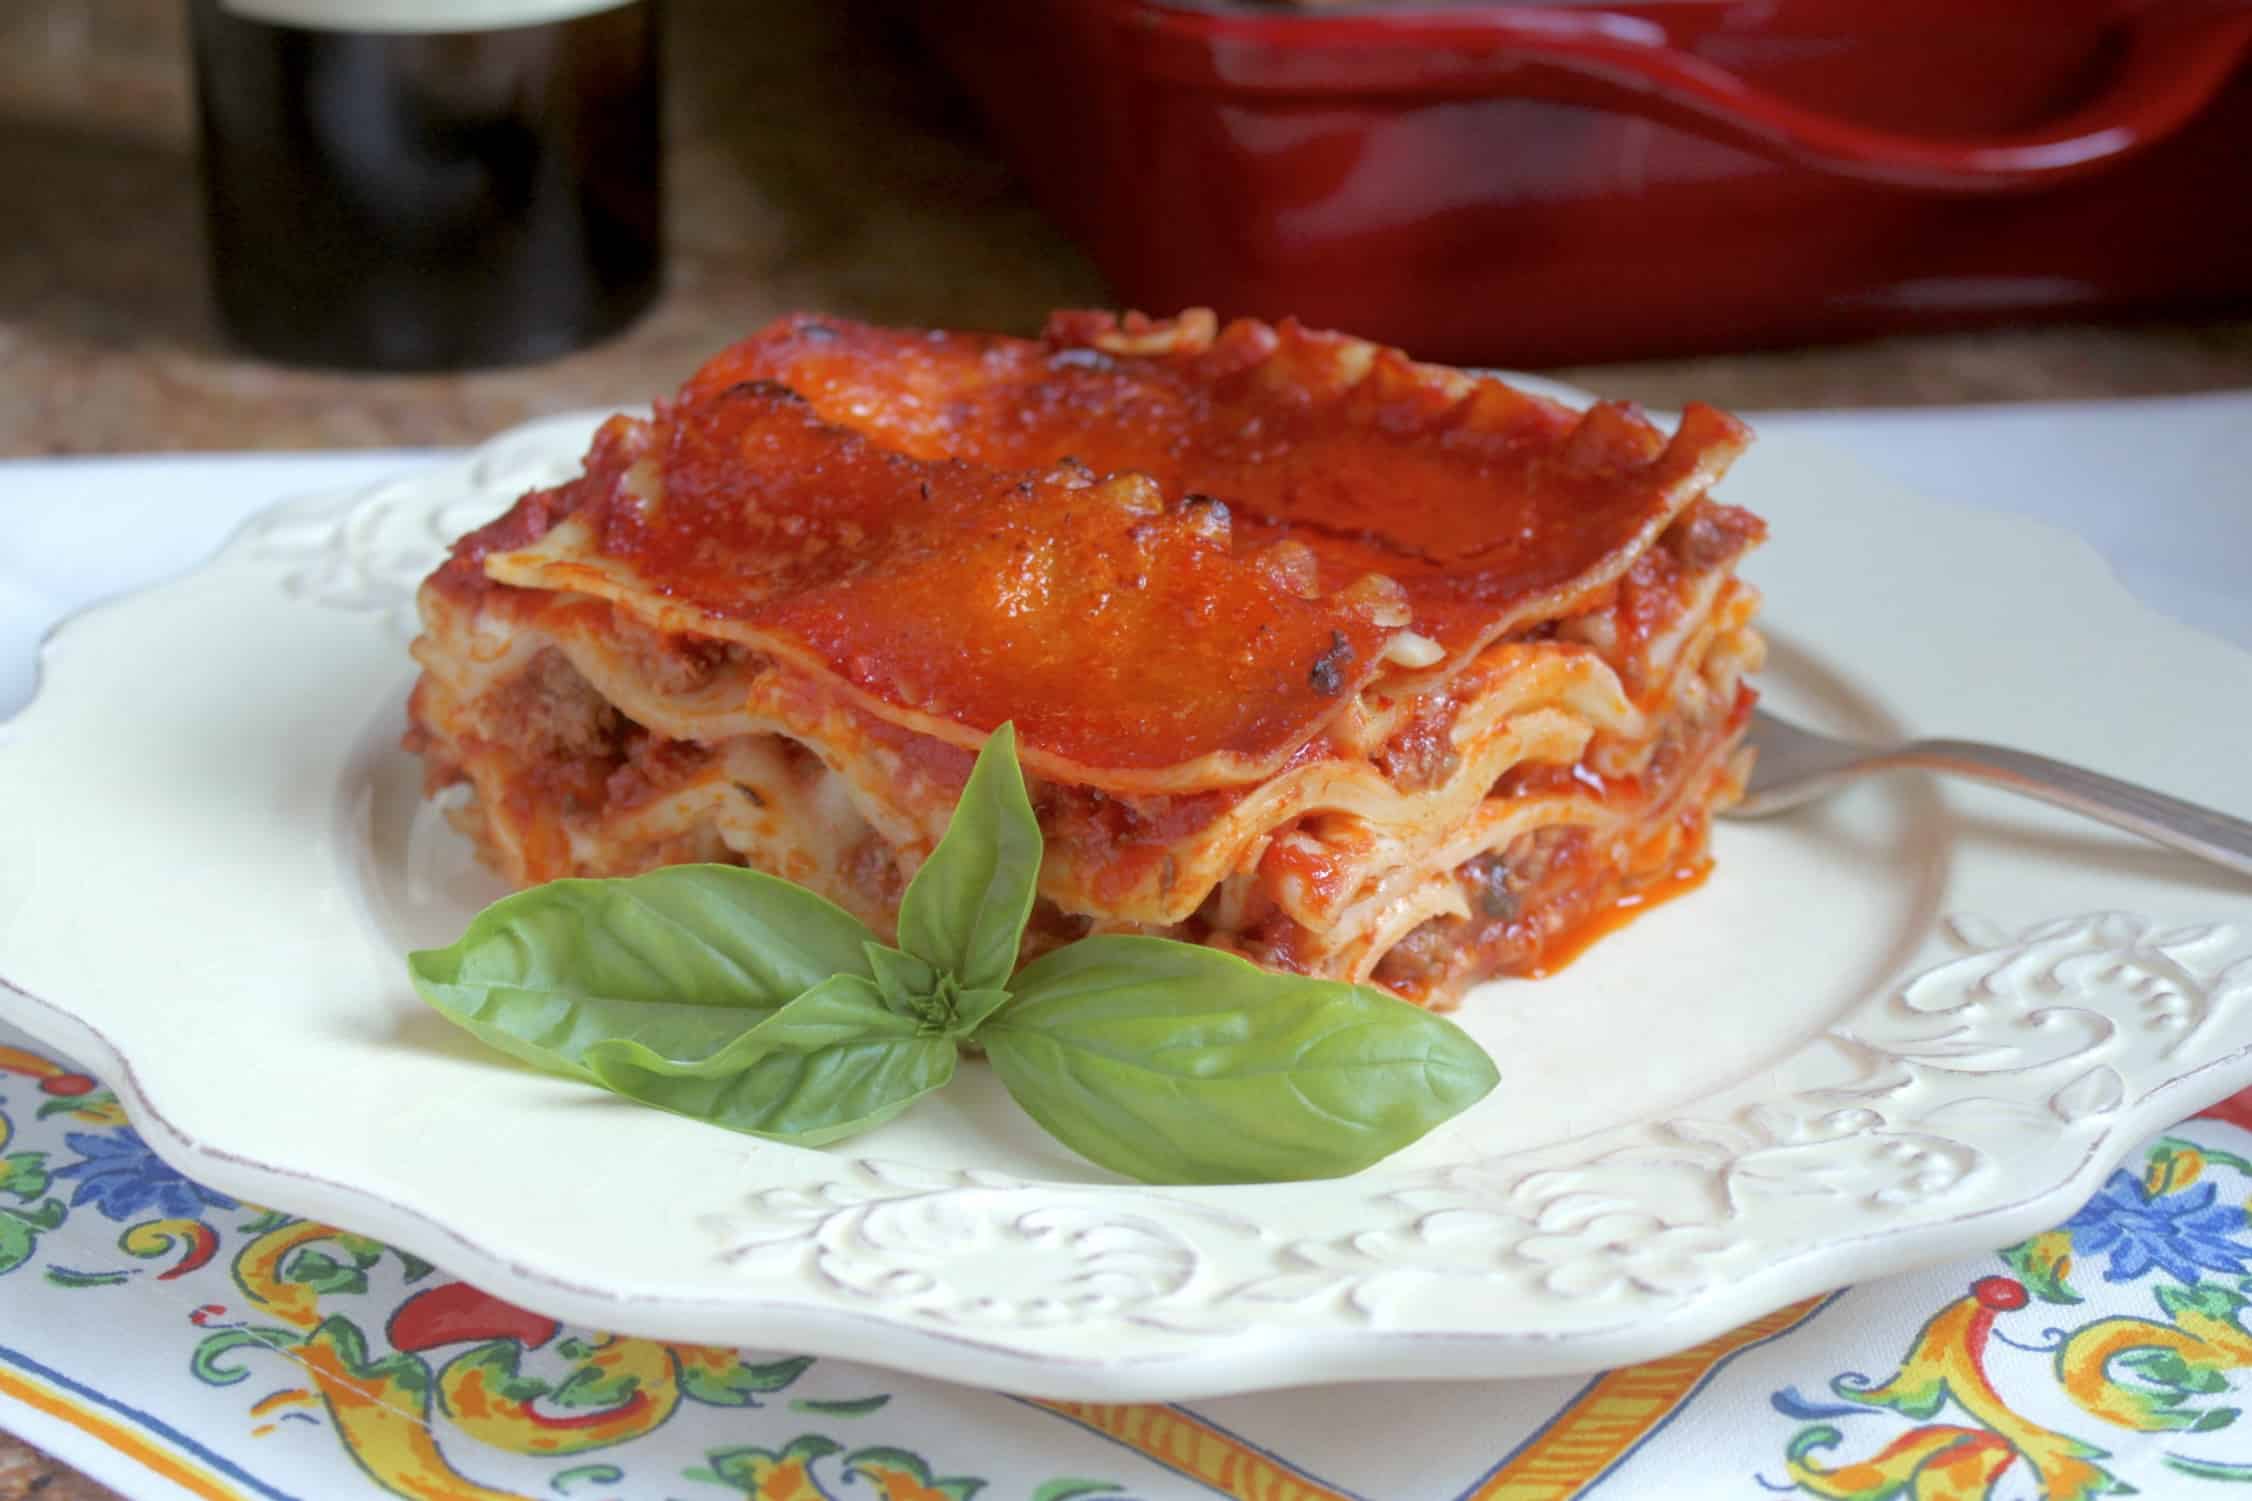 lasagna on a plate with an Italian napkin